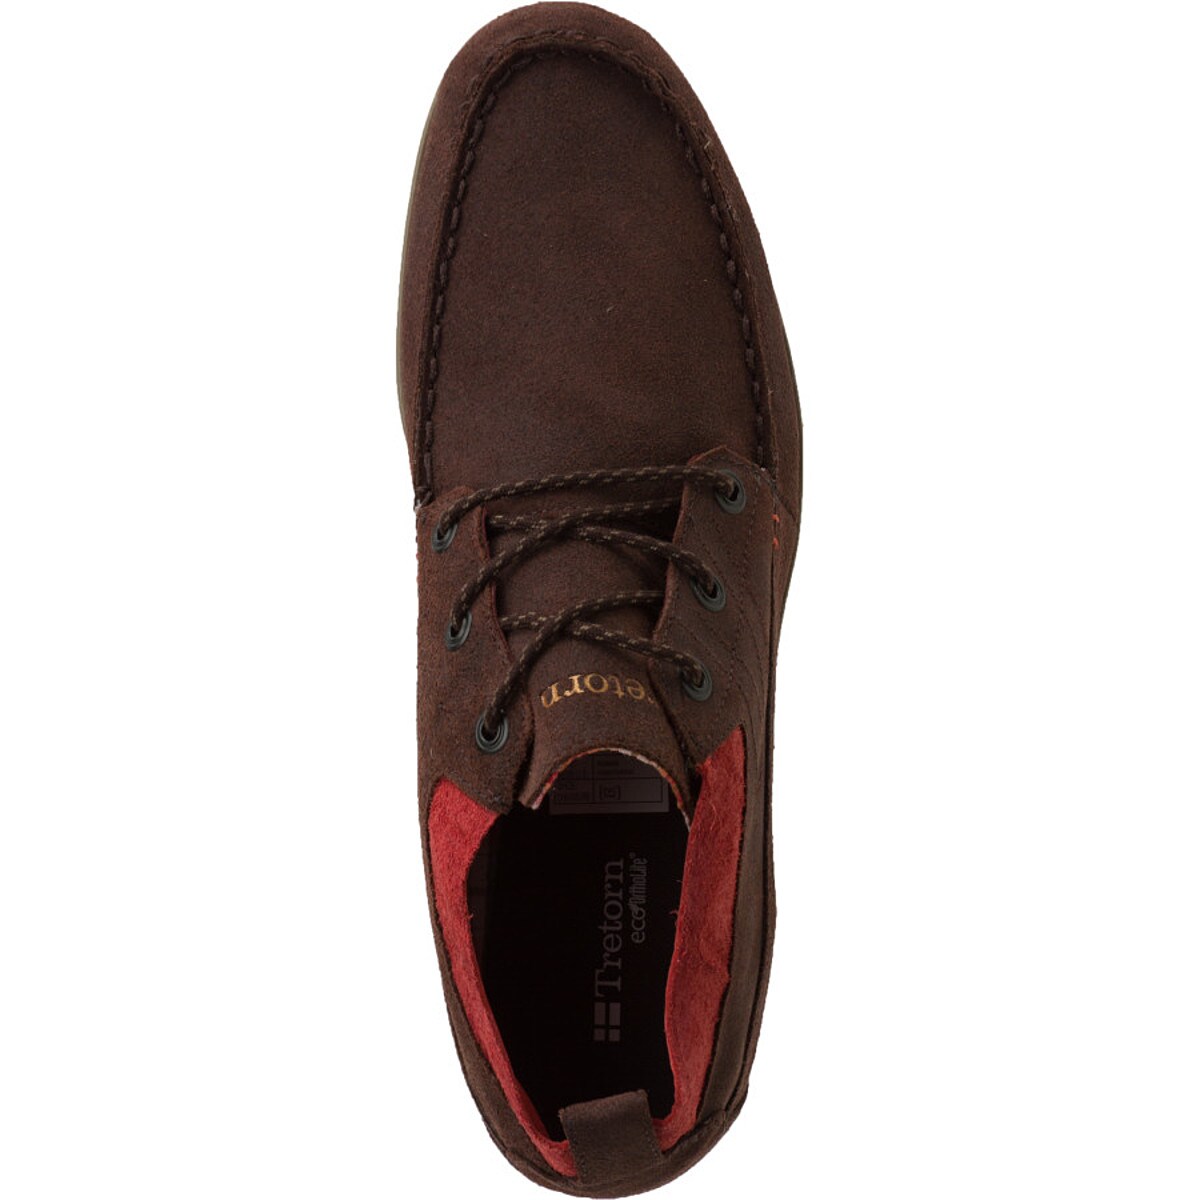 Tretorn Kasper Leather Shoe - Men's - Footwear